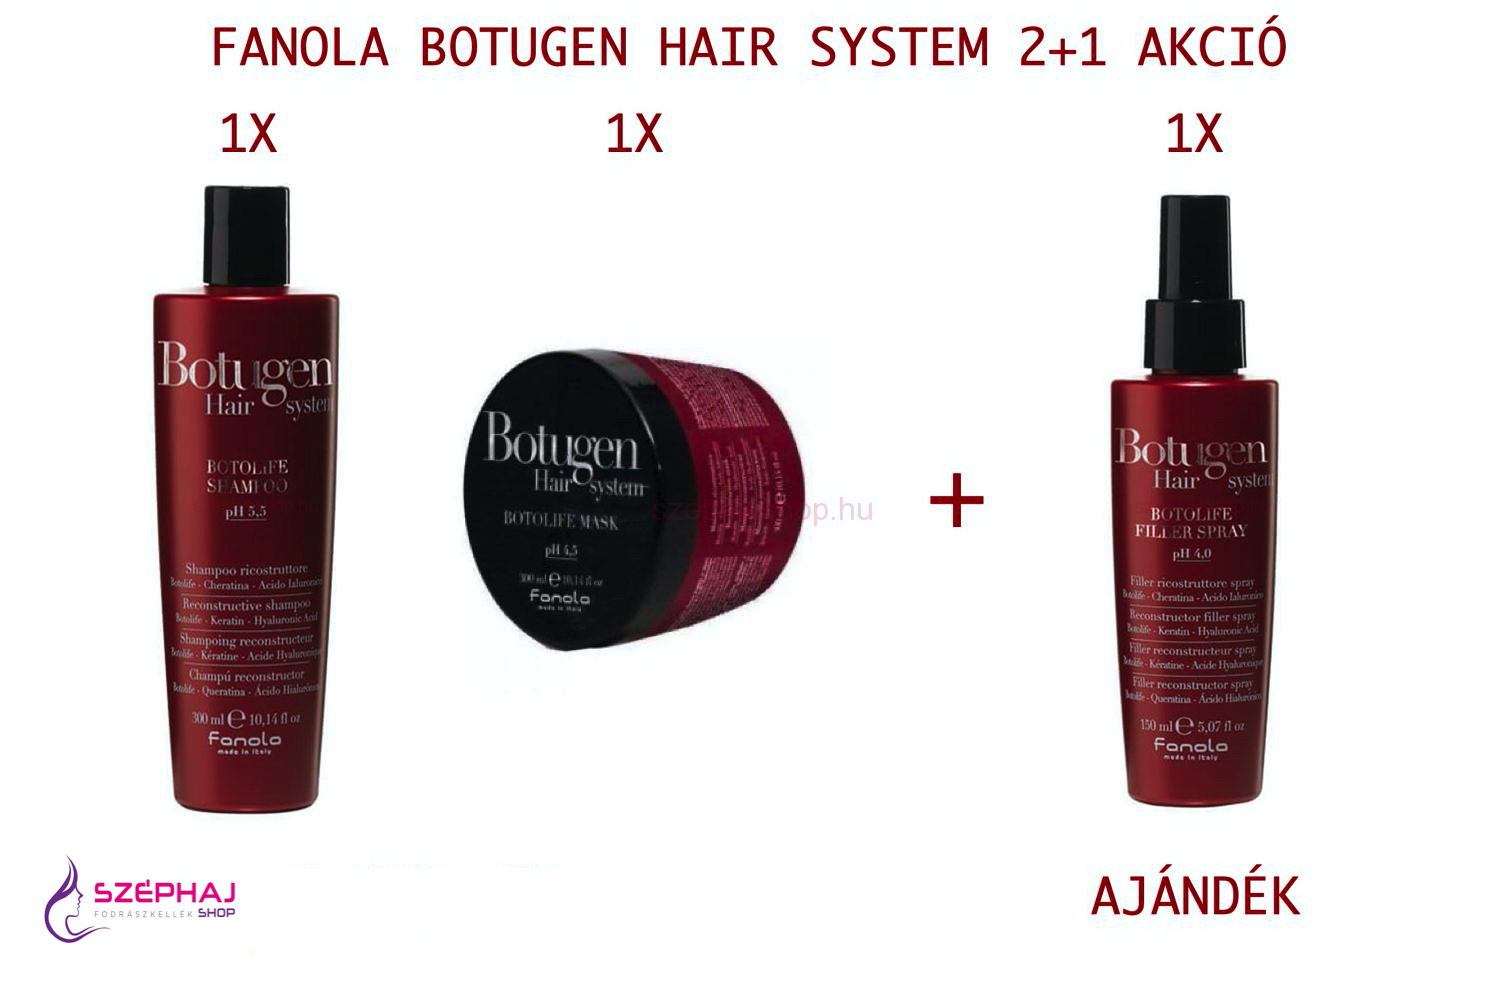 FANOLA Botugen Hair System  300 ml 2+1 AKCIÓ